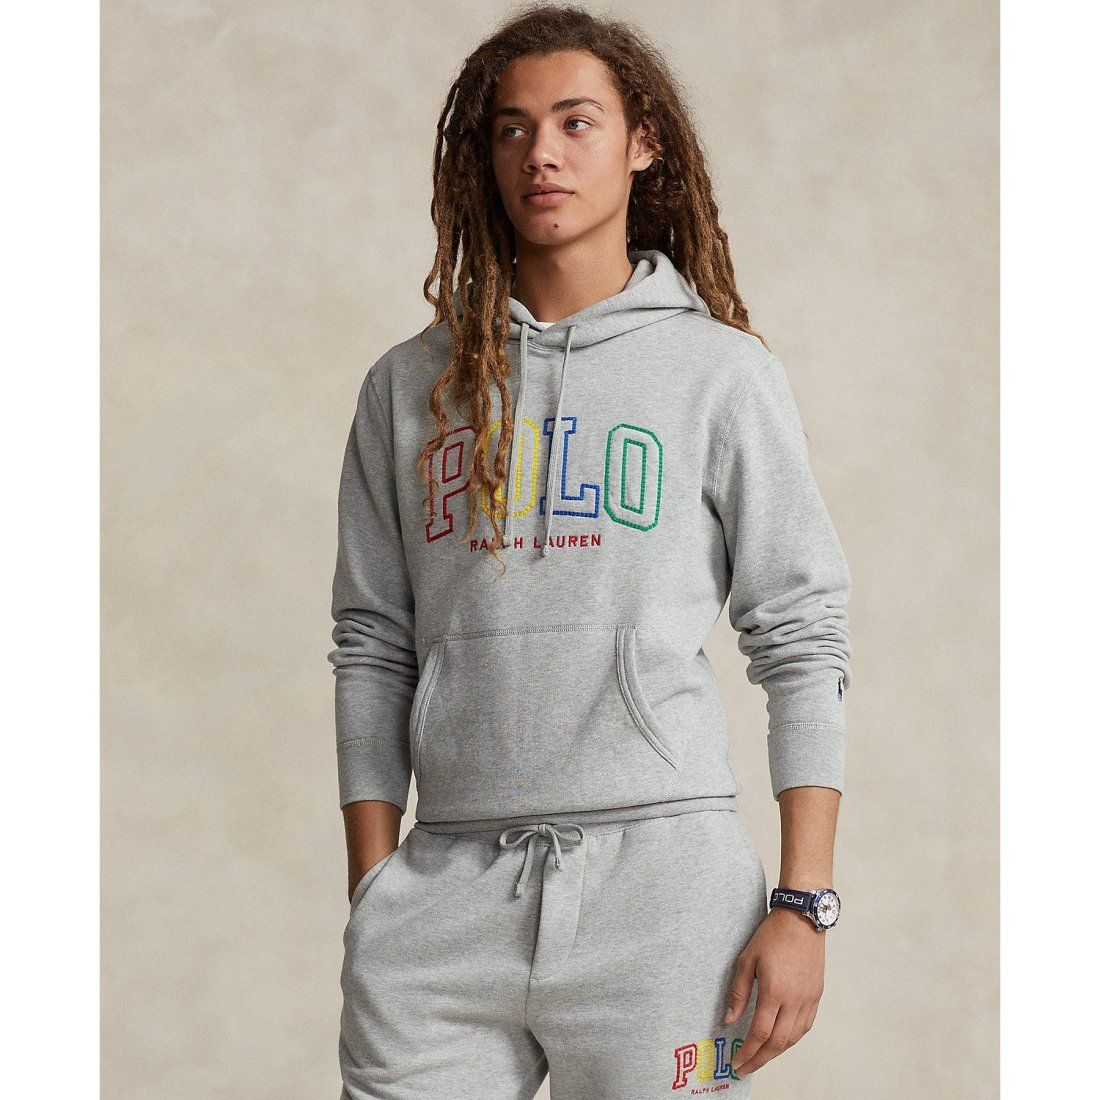 Polo Ralph Lauren - Sweatshirt à capuche  'Polo' pour Hommes